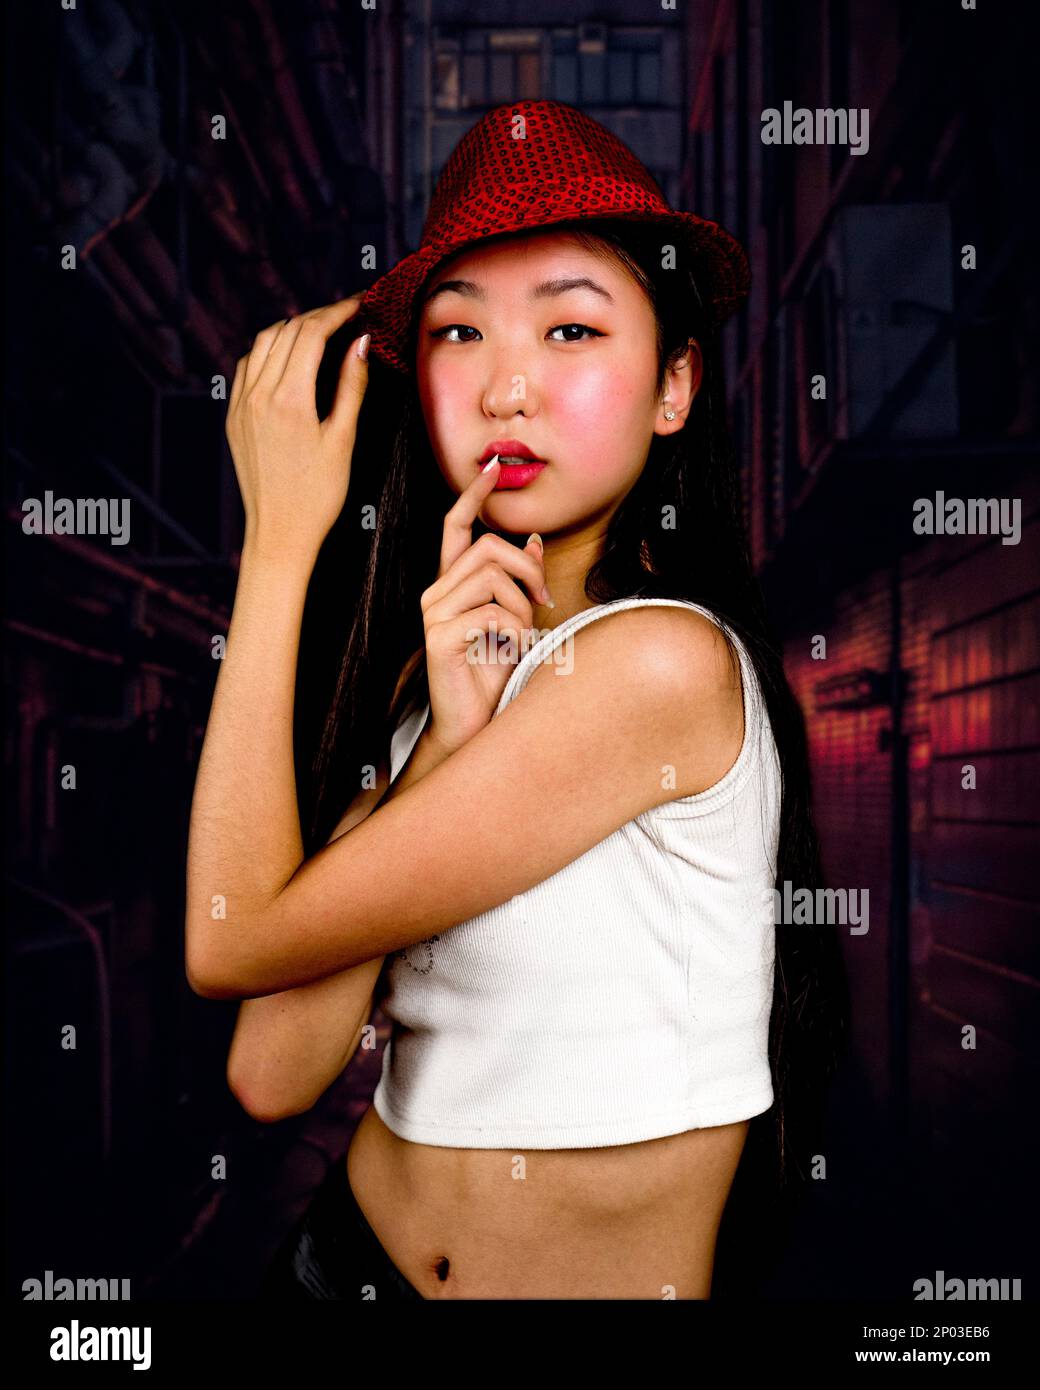 Teenager-Mädchen mit roter Fedora, die in der Gasse steht, mit Händen auf den Lippen und Hut | Rote Töne | Moody Stockfoto